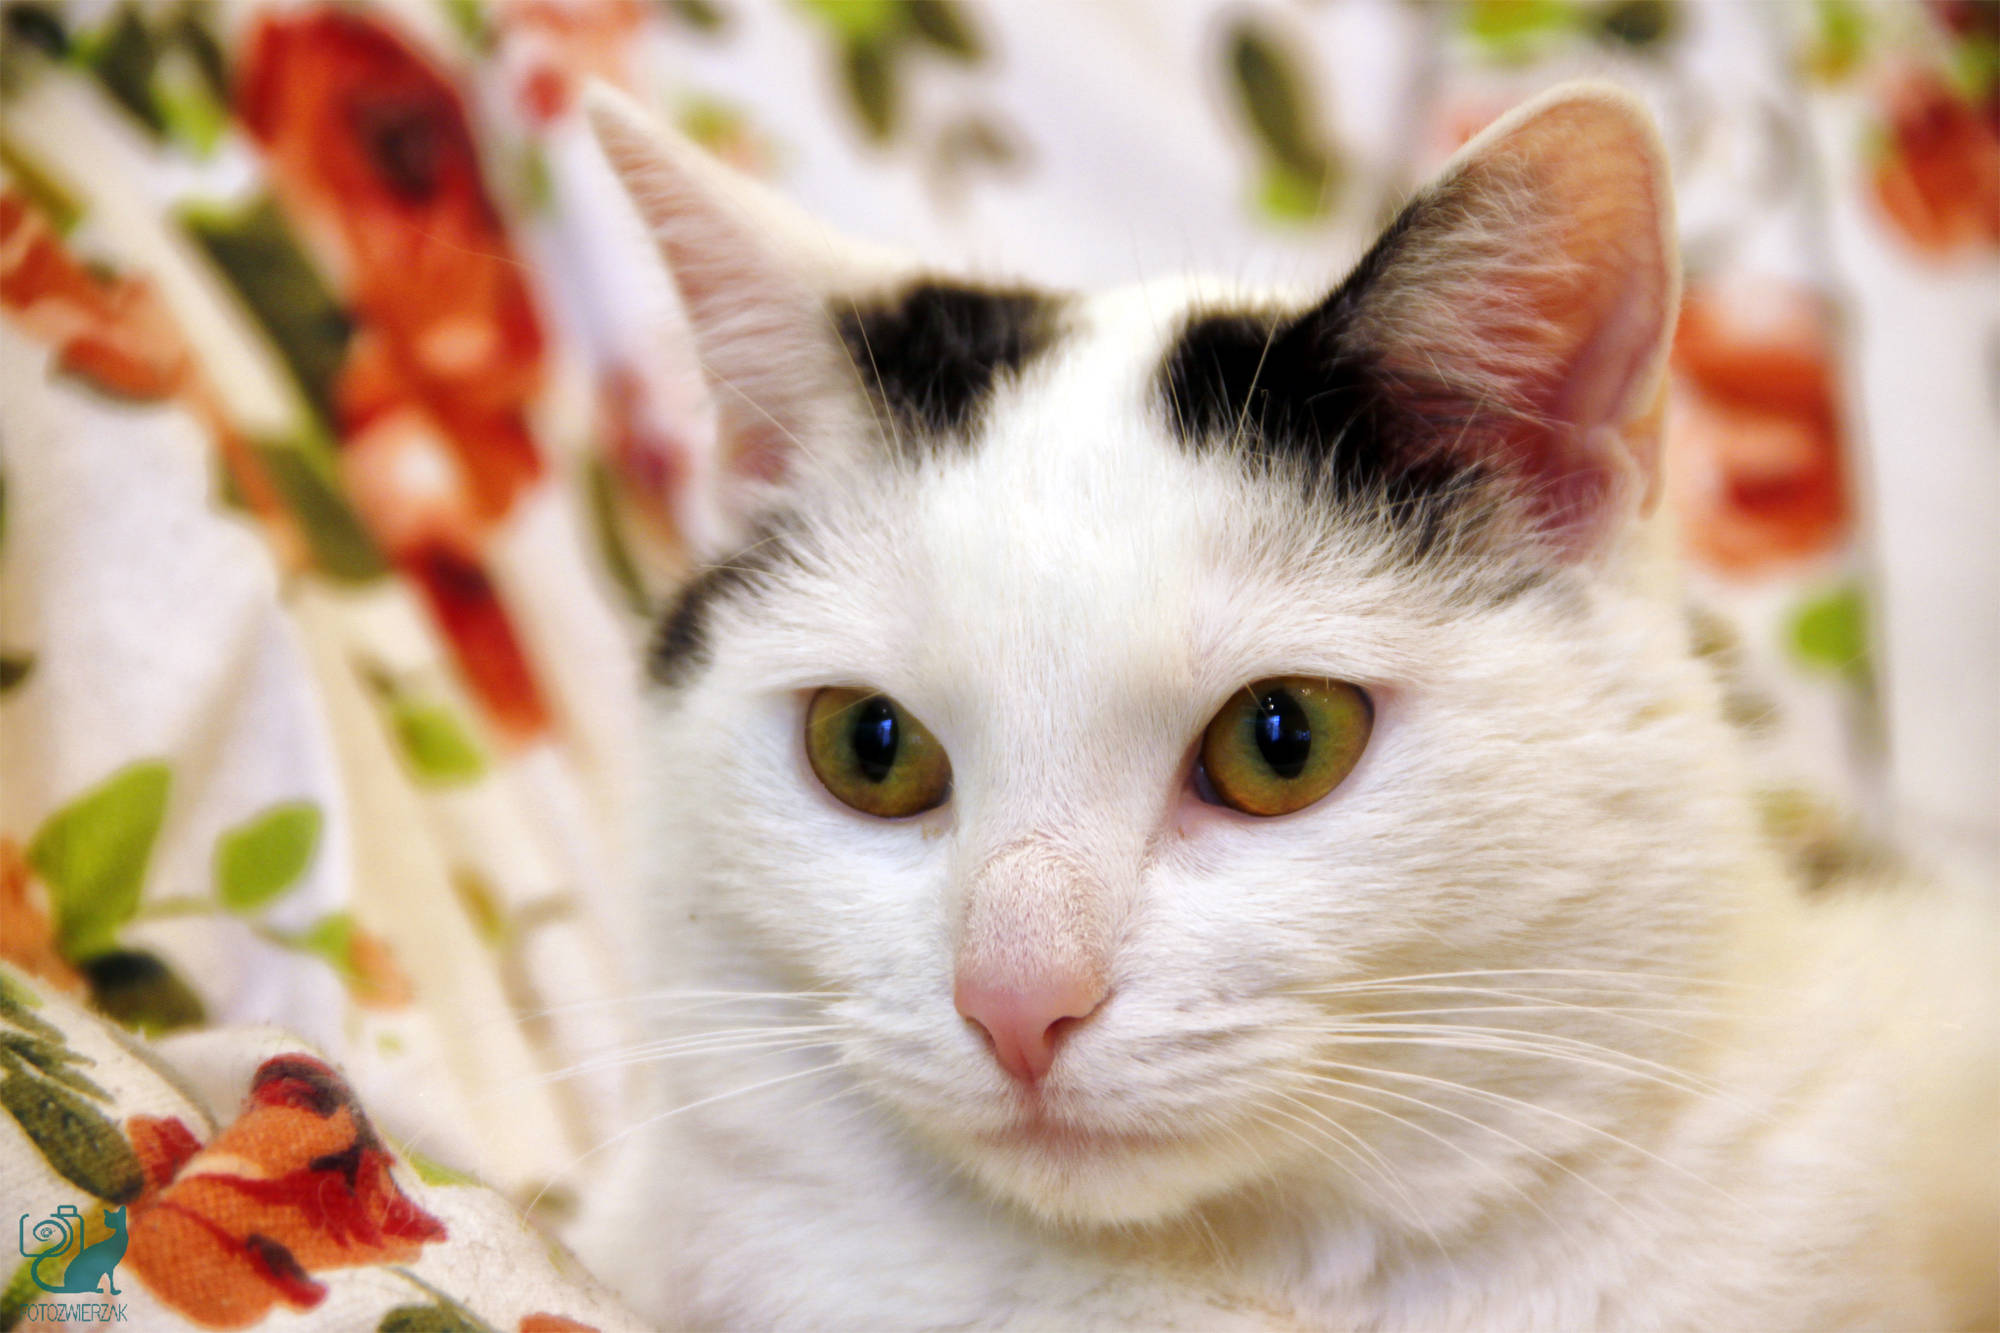 baiły kot, biały kotek, spojrzenie, zrelaksowany kot, zamyślony kot, biały kot z różowym noskiem, zamyślony kot, kot morderca